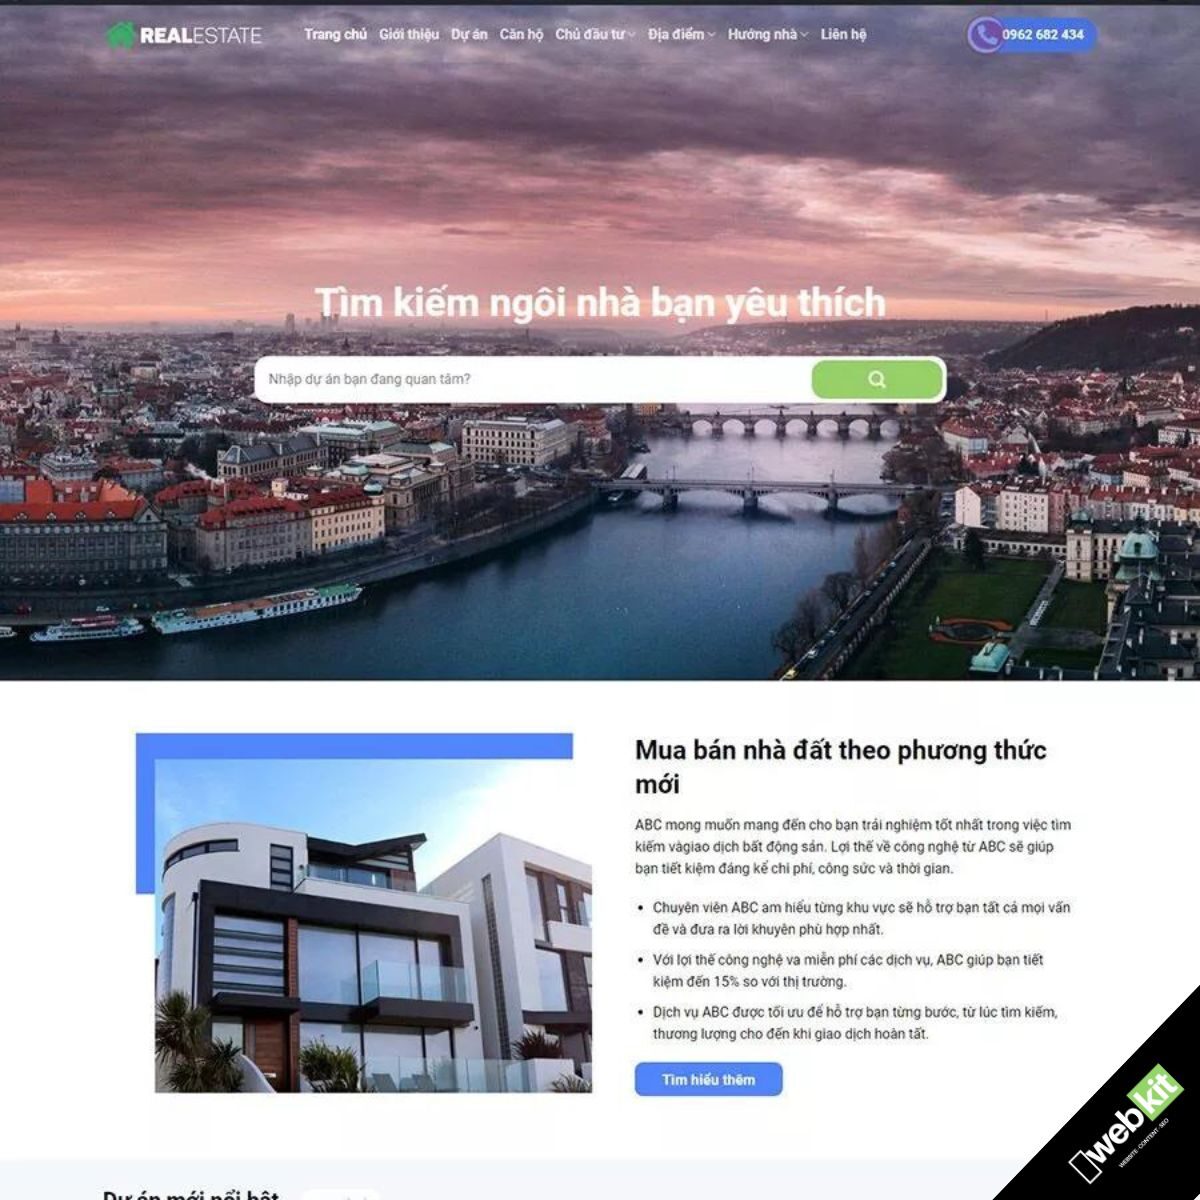 Thiết kế website bất động sản đẹp, giúp khách tìm kiếm ngôi nhà yêu thích - WebKit 10130